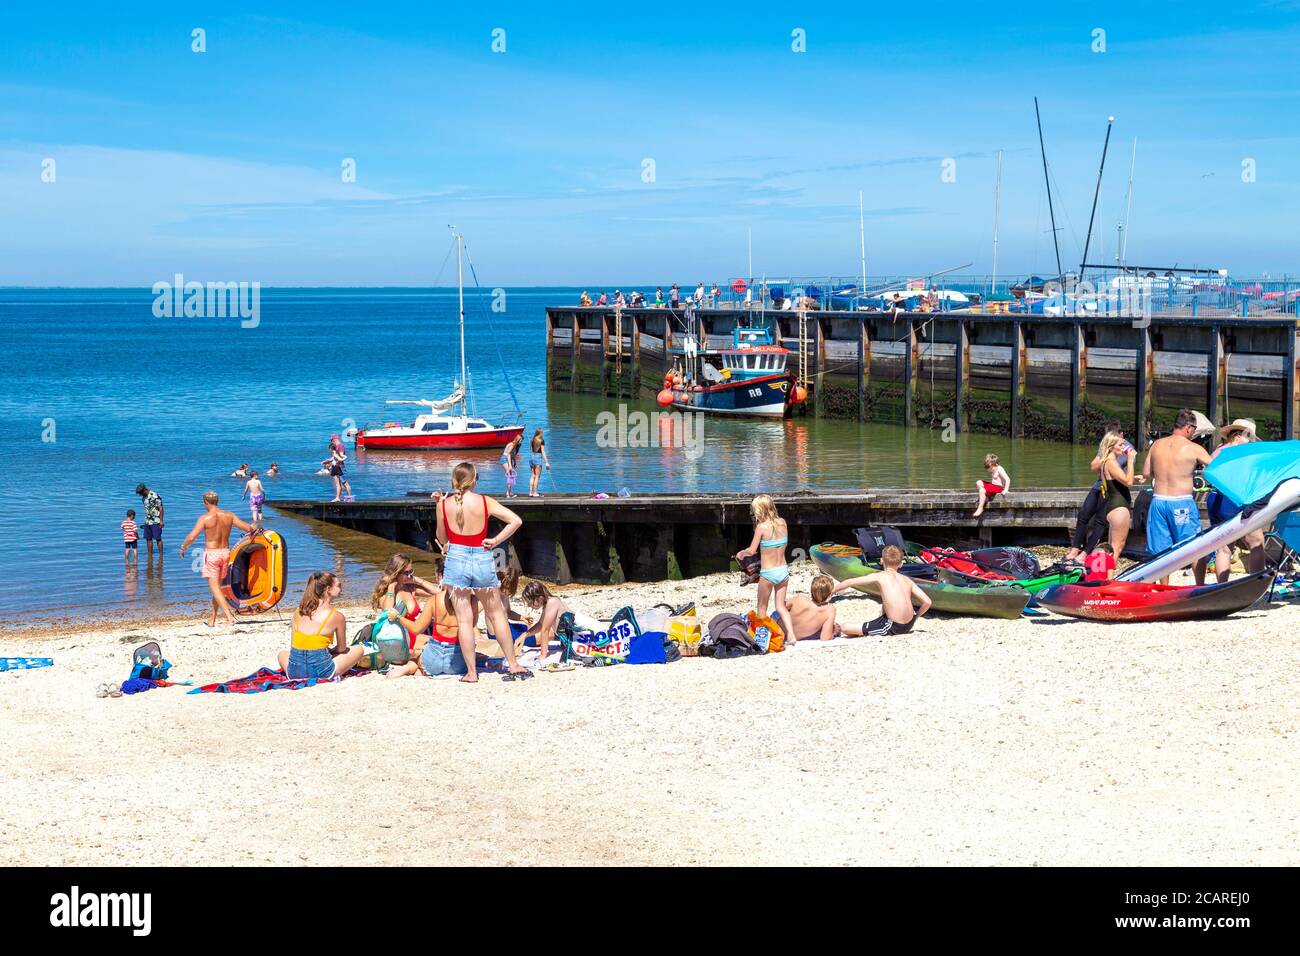 La gente prende il sole e si gode l'onda di calore alla Whitstable Beach, Kent, Regno Unito Foto Stock